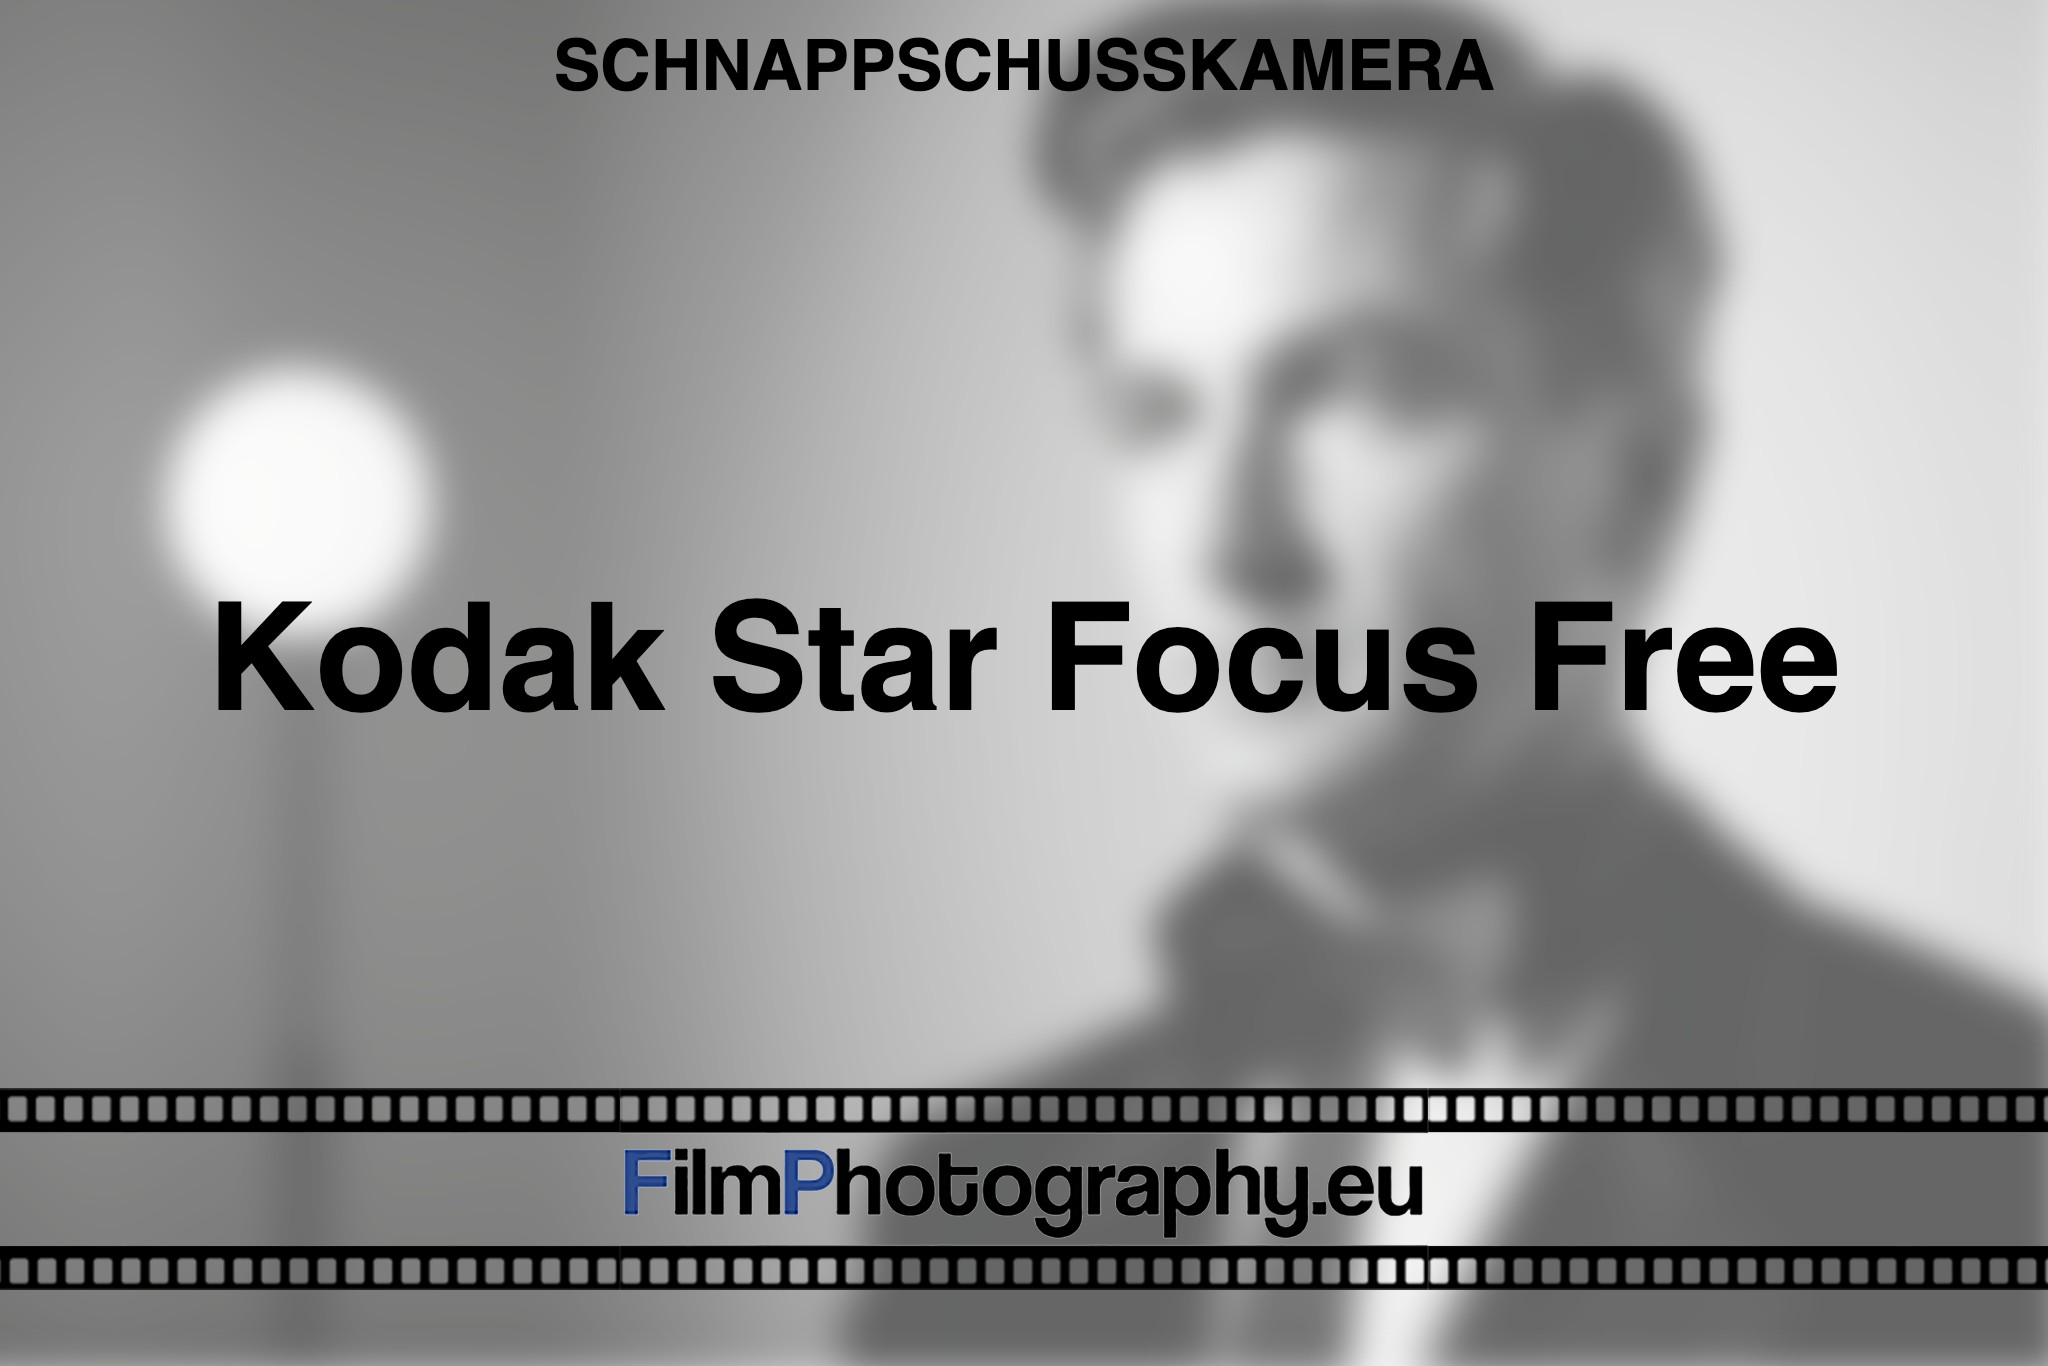 kodak-star-focus-free-schnappschusskamera-bnv